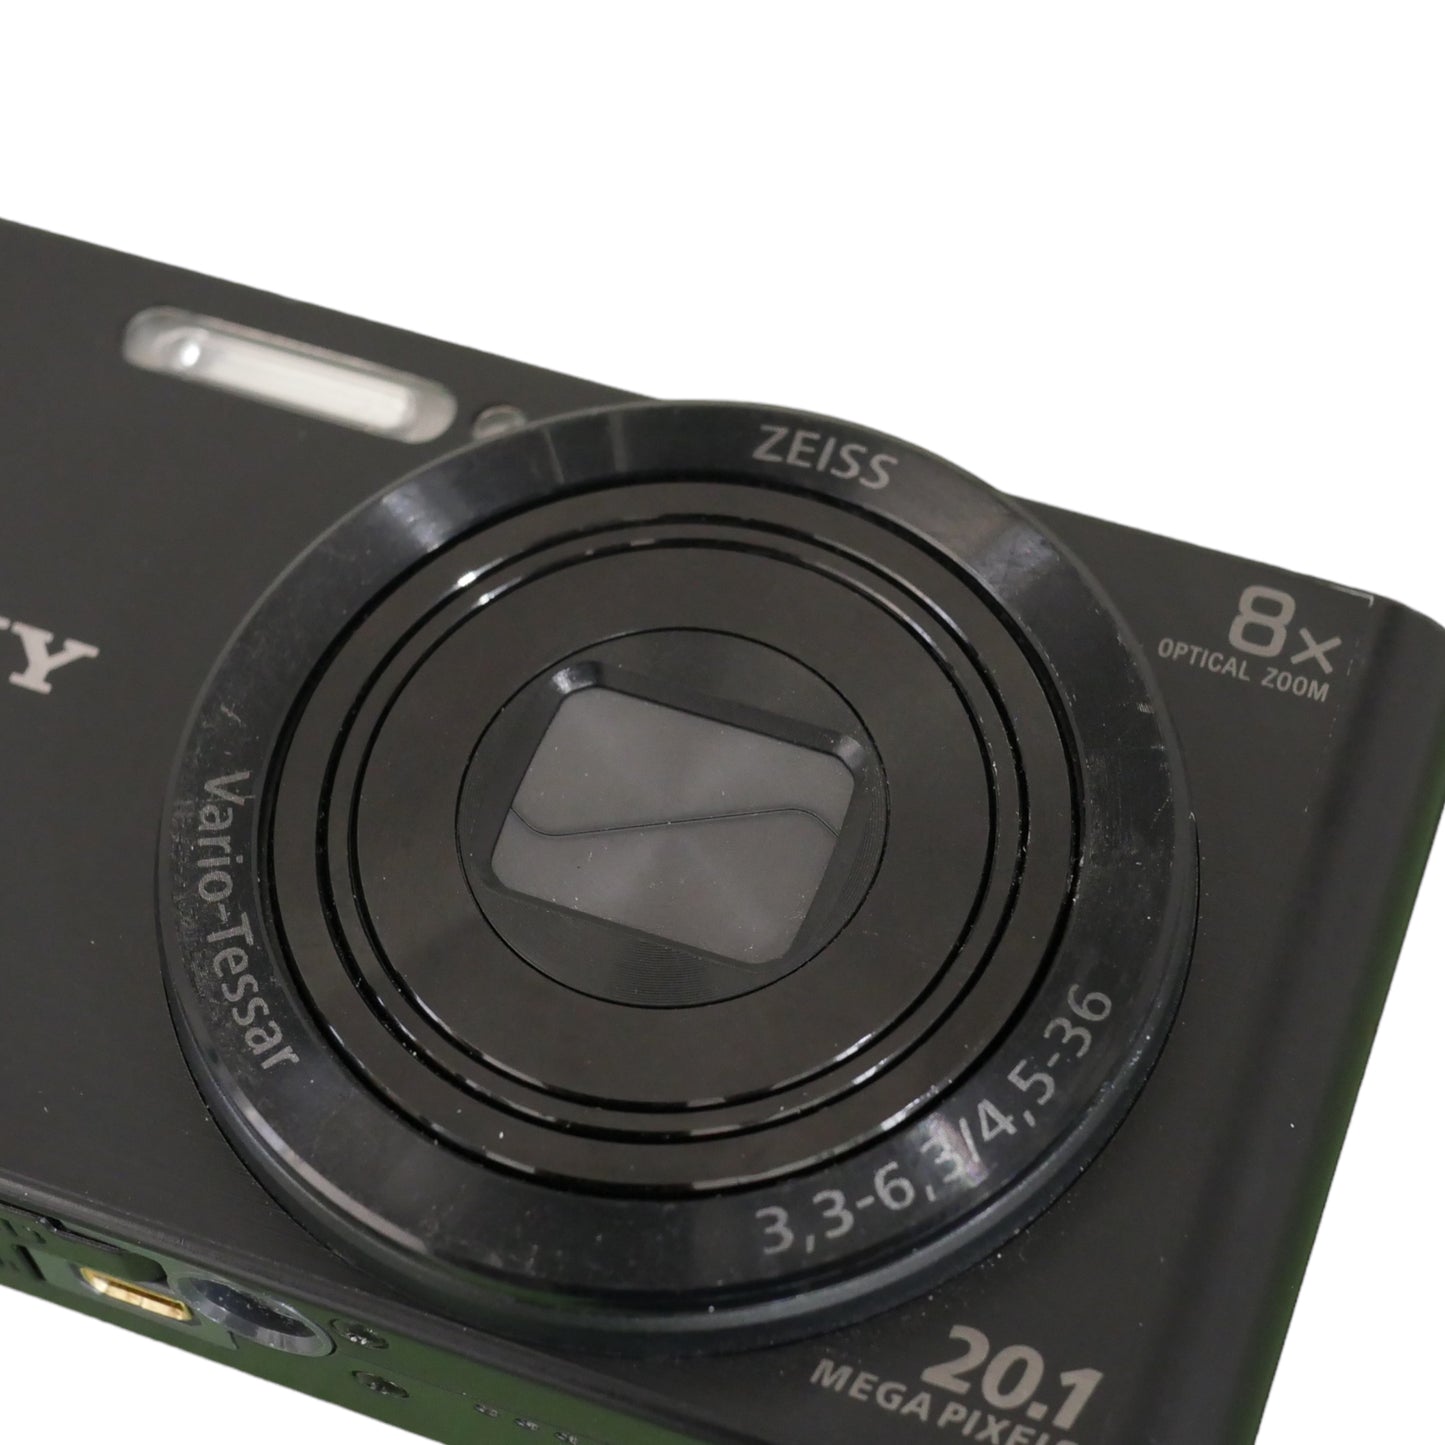 Sony Cybershot DSC - W830 - 20.1 Megapixel Camera